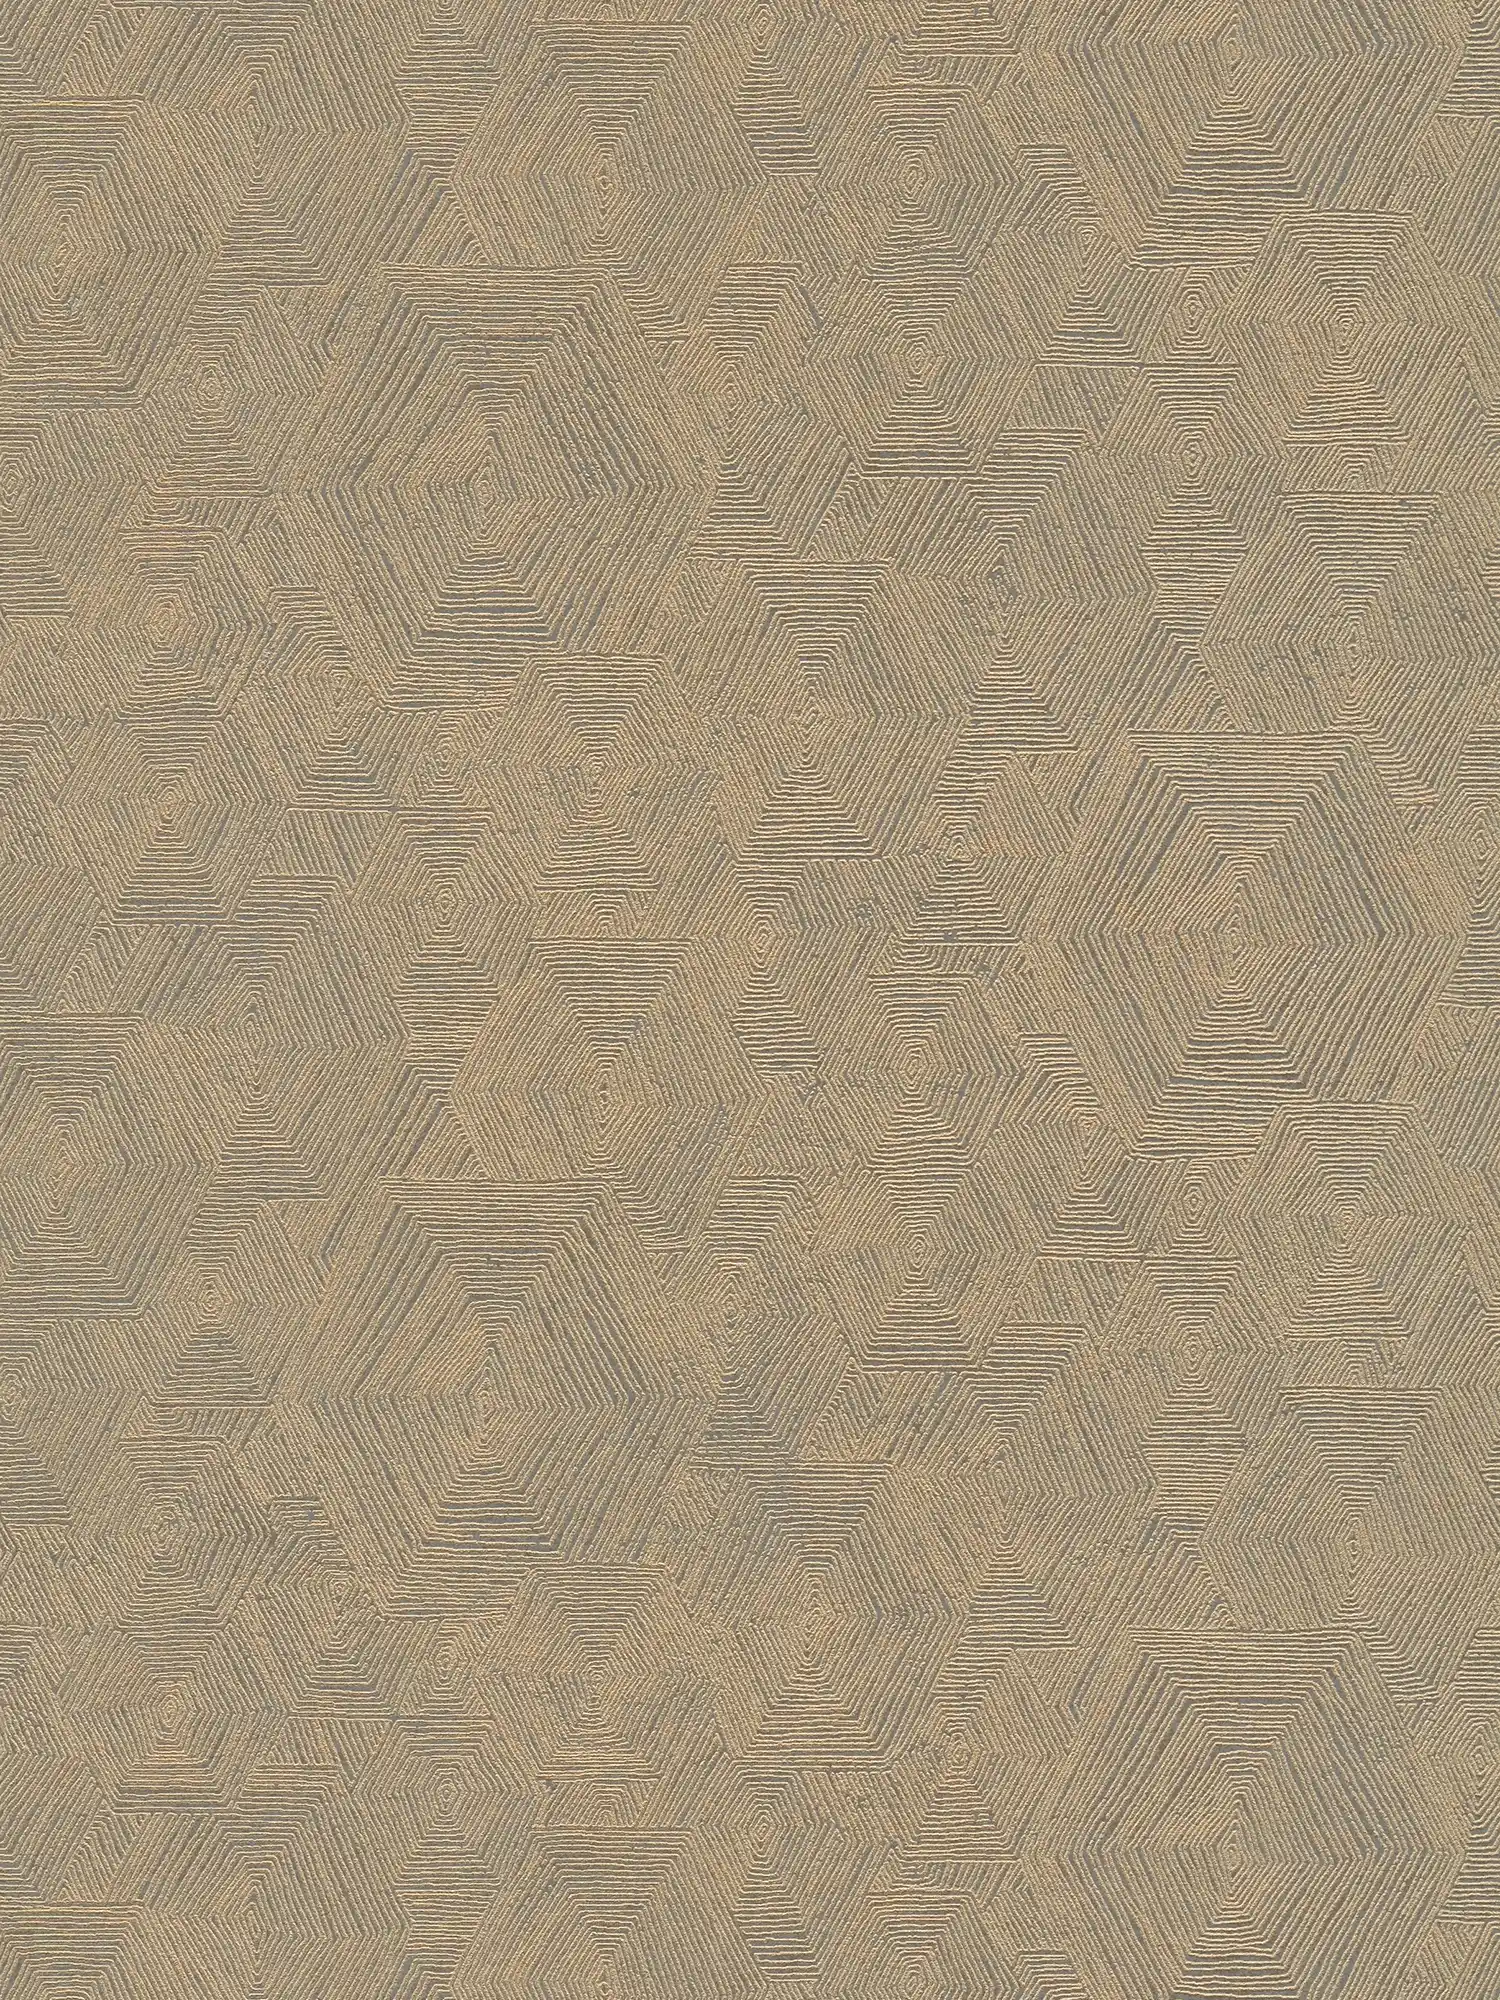 Papel pintado melange con estructura gráfica de aspecto étnico - marrón, metálico
